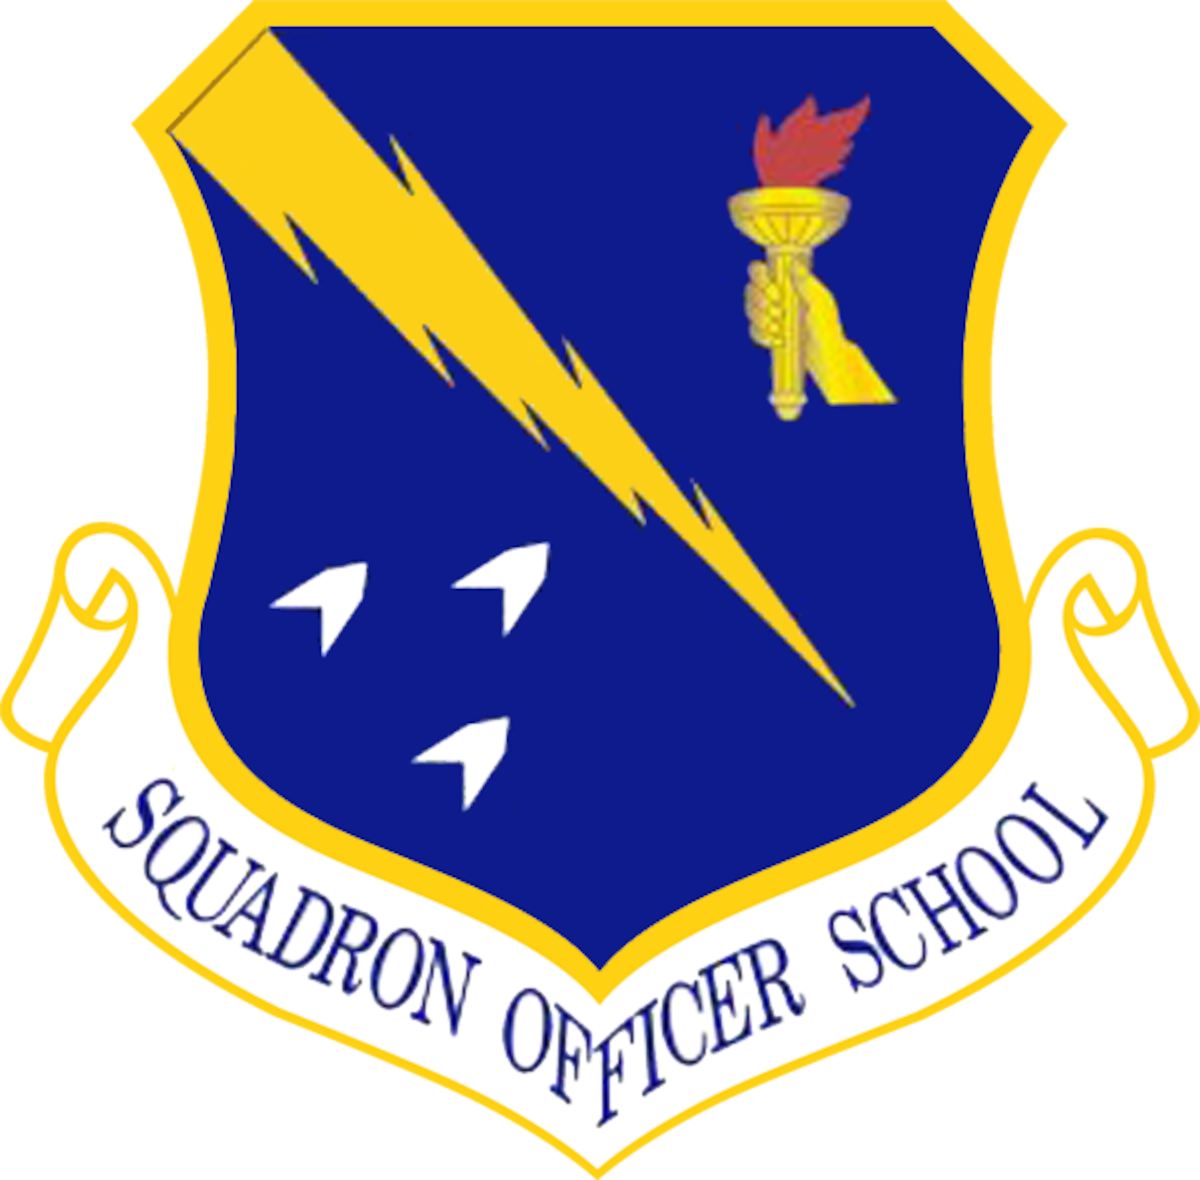 Squadron Officer School Unit Emblem